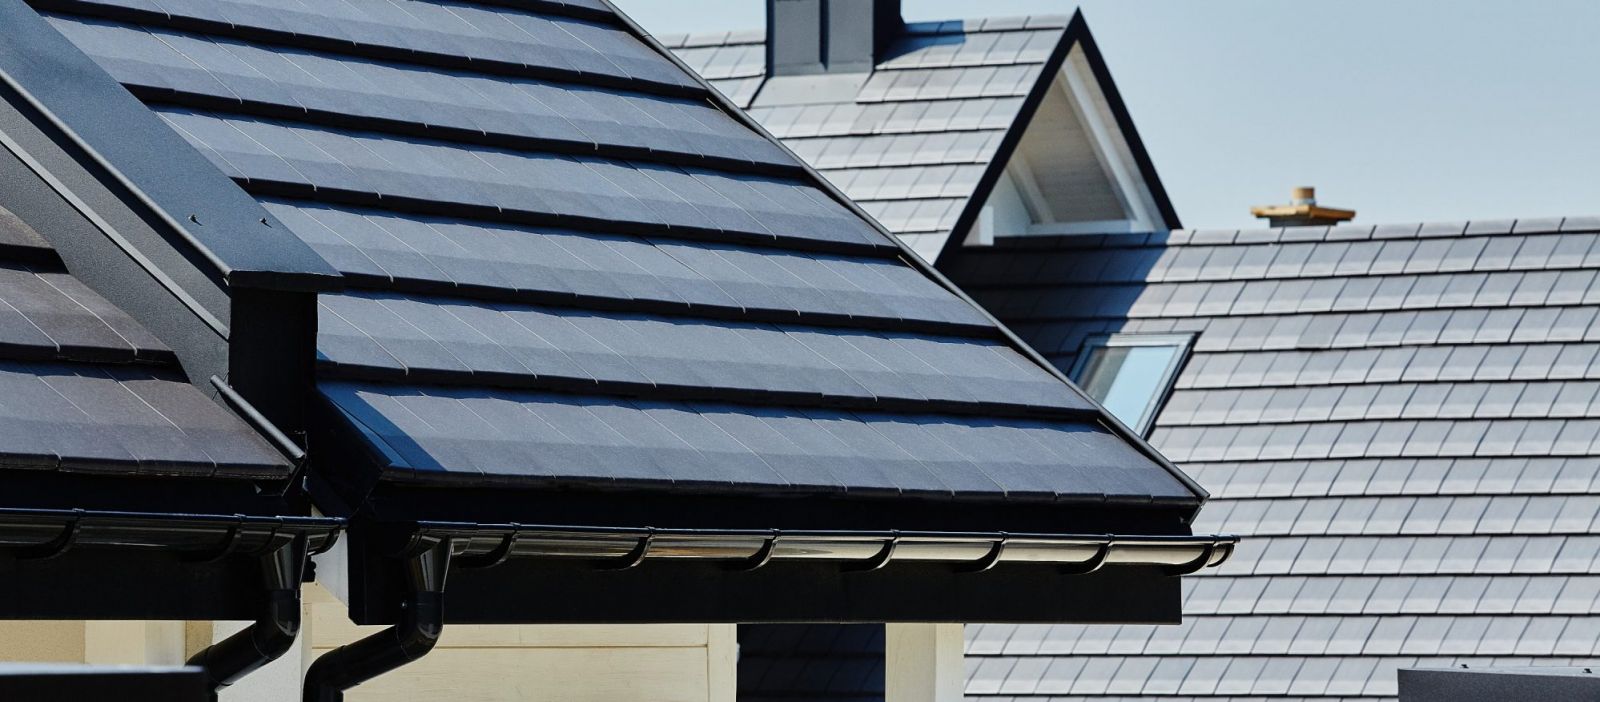 Dachówki ceramiczne tworzą ciężkie pokrycie dachowe złożone z drobnych elementów, bezpieczne pod kątem odporności na wiatr, zwłaszcza przy zastosowaniu systemowych spinek mocujących (na zdjęciu dachówki marki Koramic, fot. WIENERBERGER)